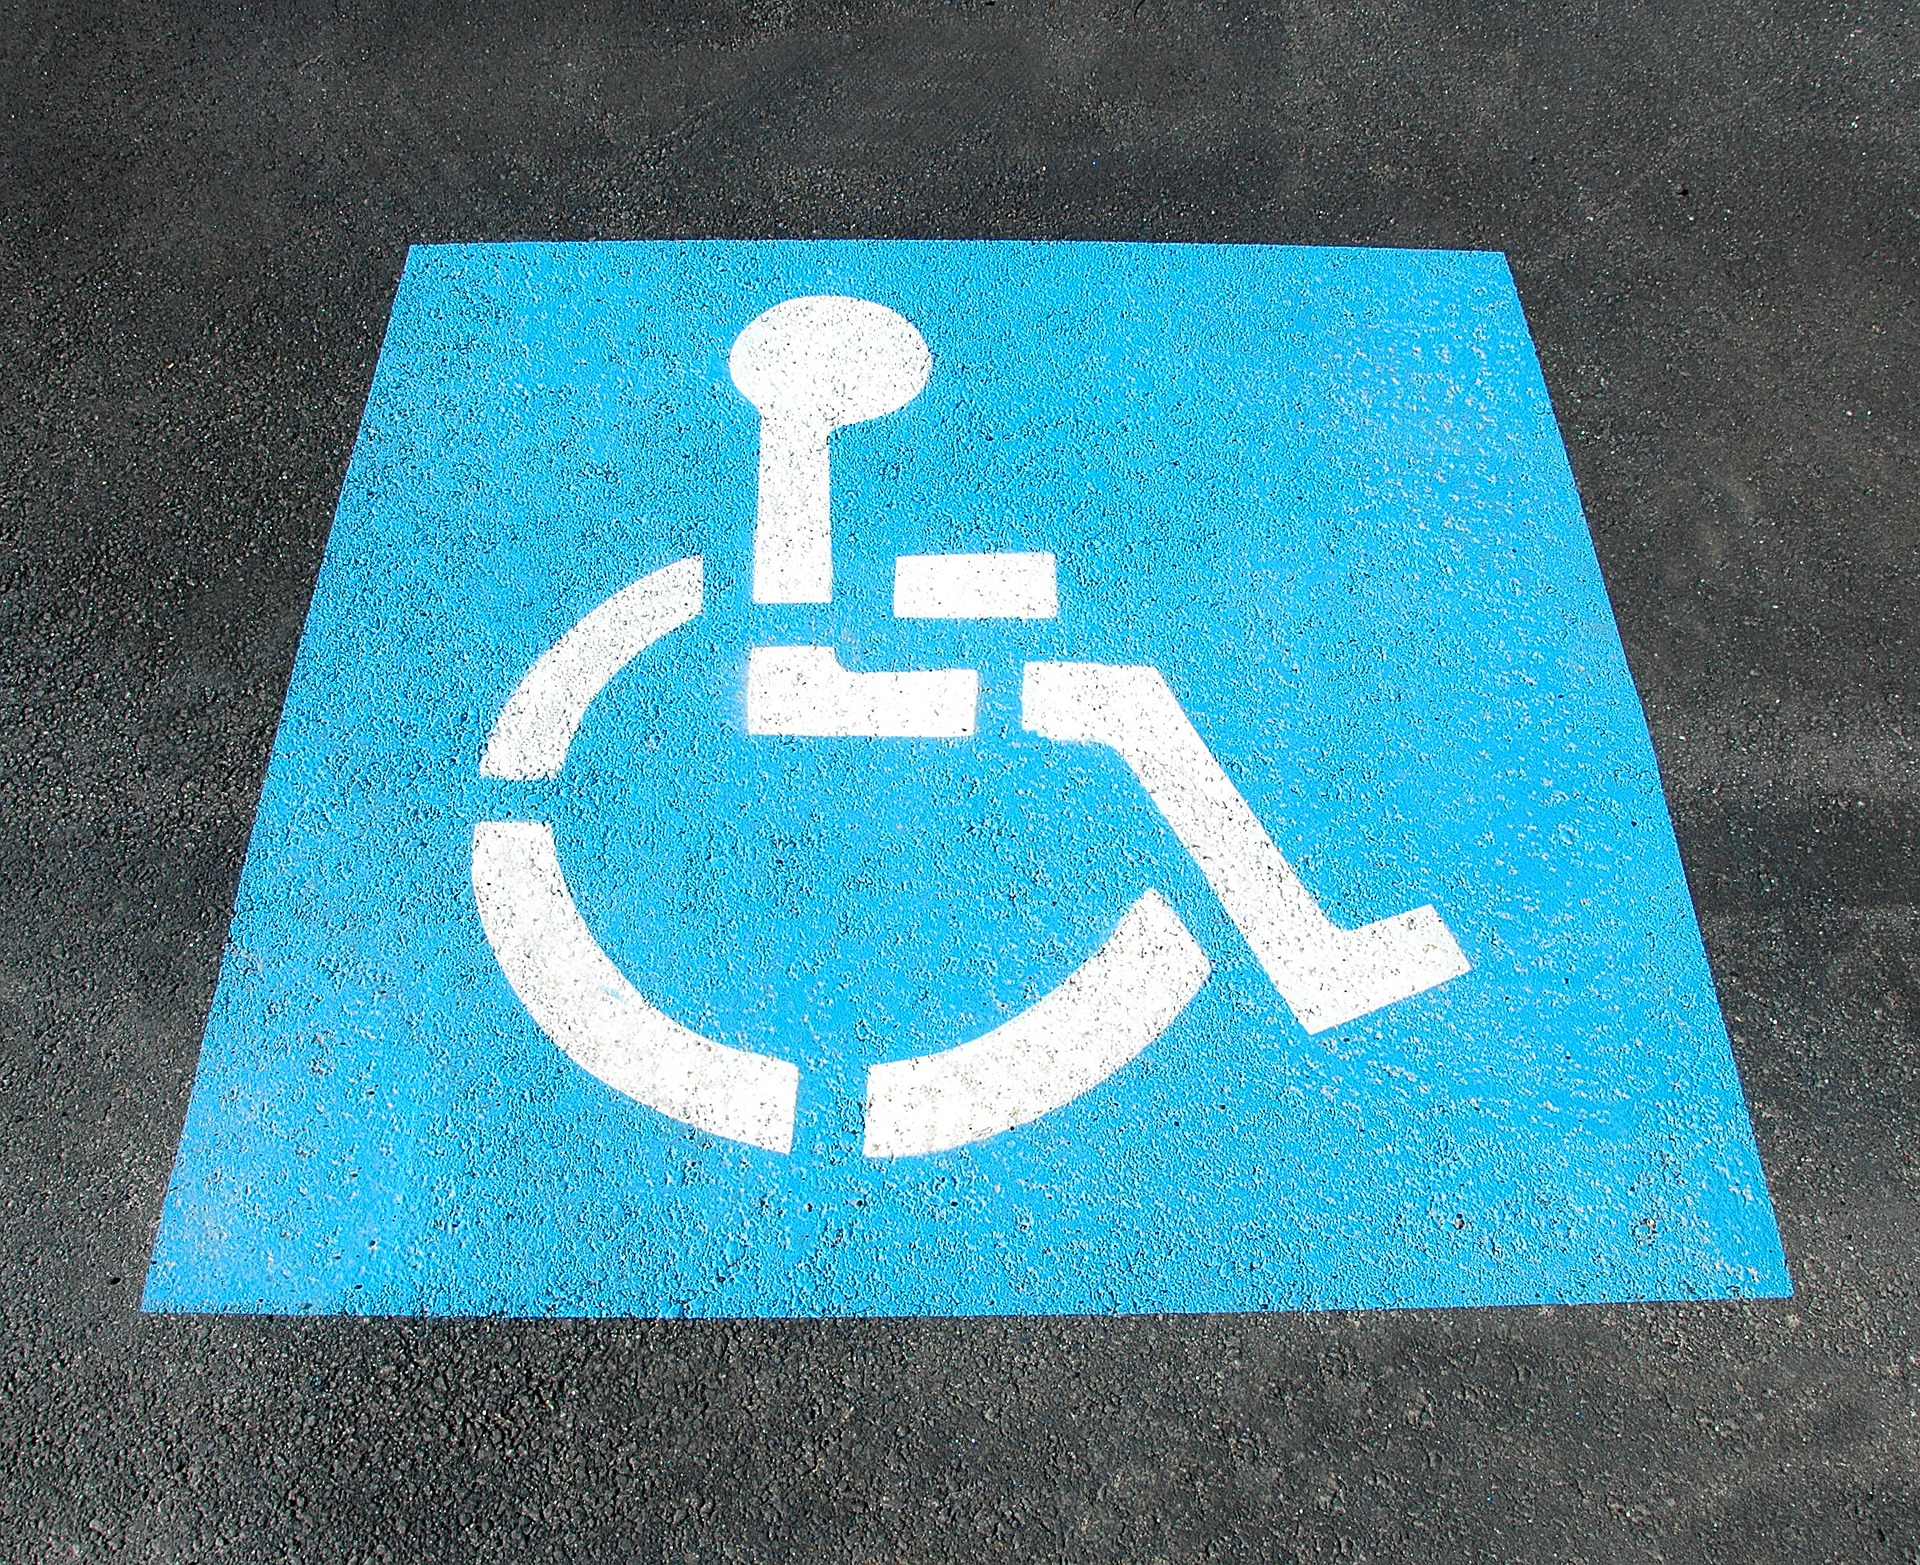 парковка для инвалида, знак, разметка, Инвалид в штате, льготы по налогам, Berkshire Advisory Group, льготы по инвалидам, Мария Артемова, проверка ФНС, сотрудники инвалиды,безбарьерная среда, доступная среда, доступная компания, ограниченные возможности здоровья, Кандидат с инвалидностью, работа с инвалидами, как нанять инвалида, какие плюсы в нанимании инвалида, какие плюсы если нанять инвалида, какие льготы если нанять инвалида, какие плюсы если взять на работу инвалида, работодатель и инвалид, финансовые плюсы работы с инвалидами, закон о работе с инвалидами